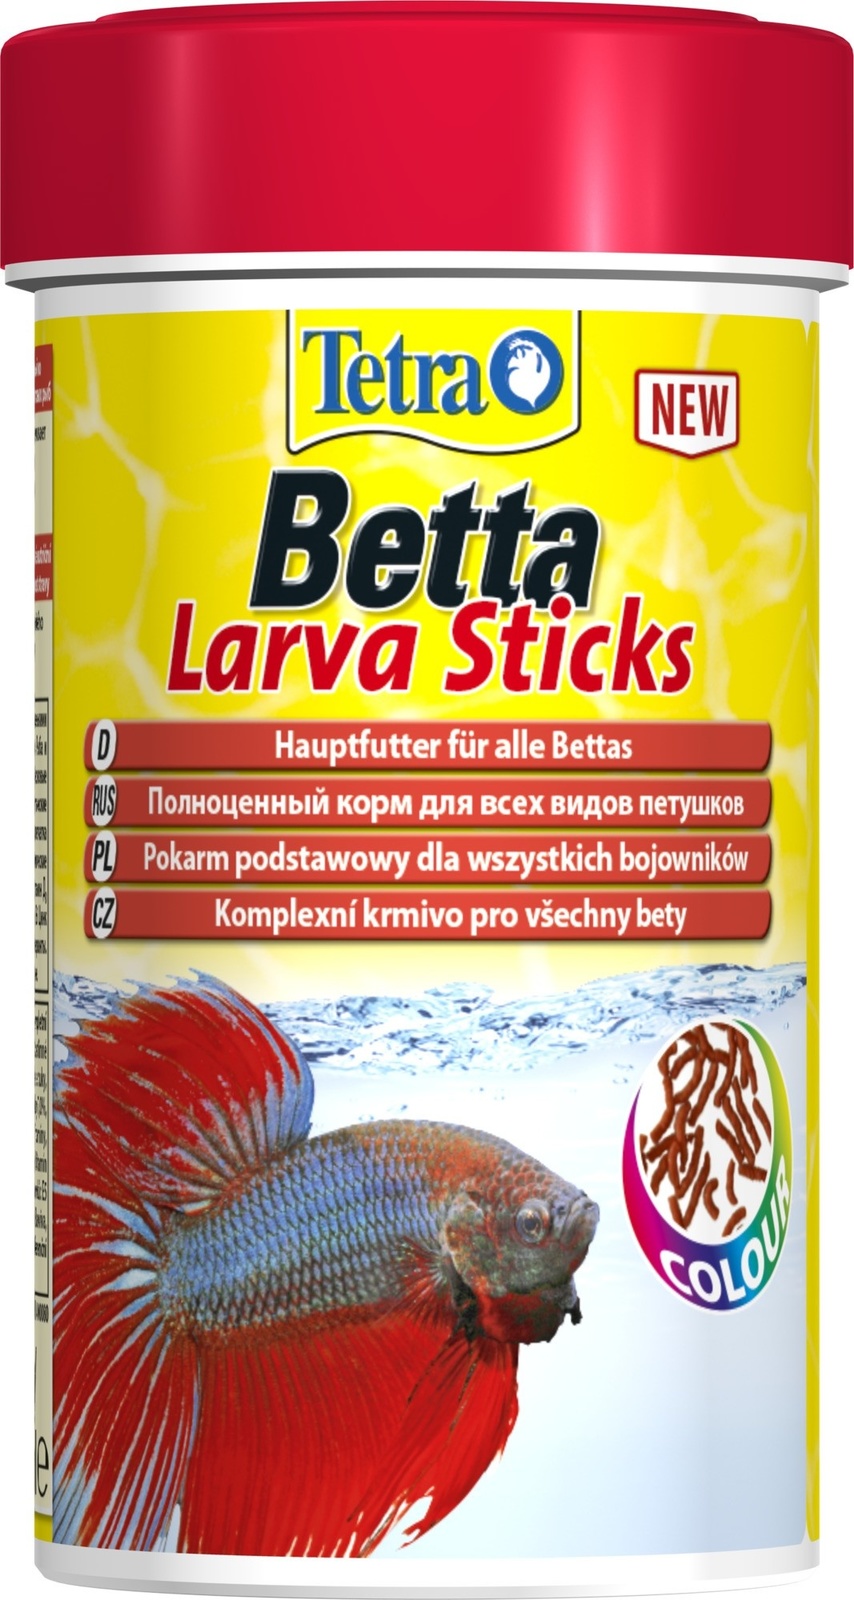 Tetra (корма) Tetra (корма) корм для петушков и лабиринтовых рыб. палочки Betta Larva Sticks (33 г) tetra корма tetra корма корм для бойцовых рыб и других видов лабиринтовых имитация мотыля 5 г